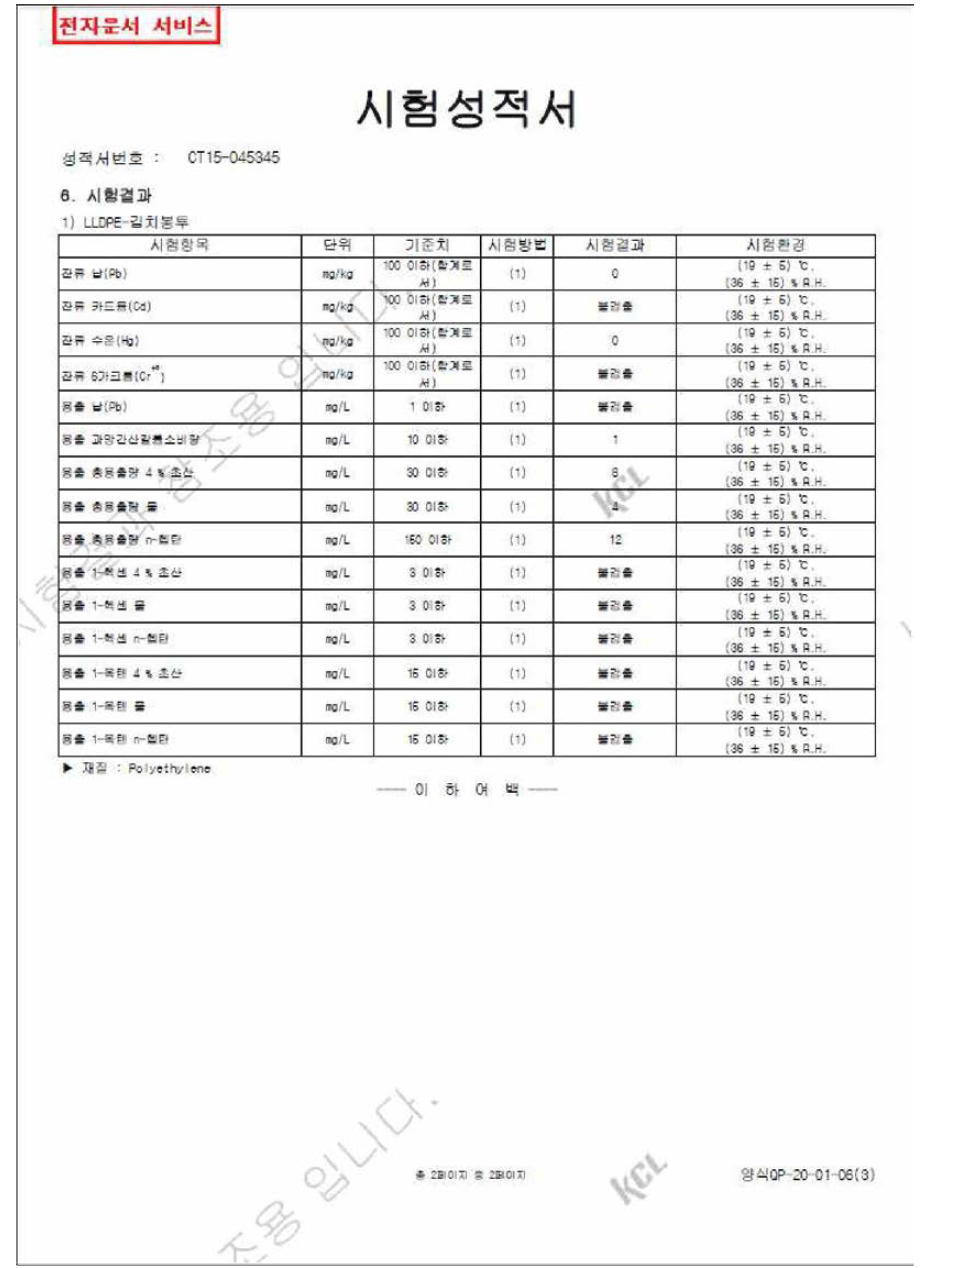 김치봉투 카드뮴, 납, 수은, 6가크롬, 중금소, 증발잔류물 공인기관 시험성적서 측정결과